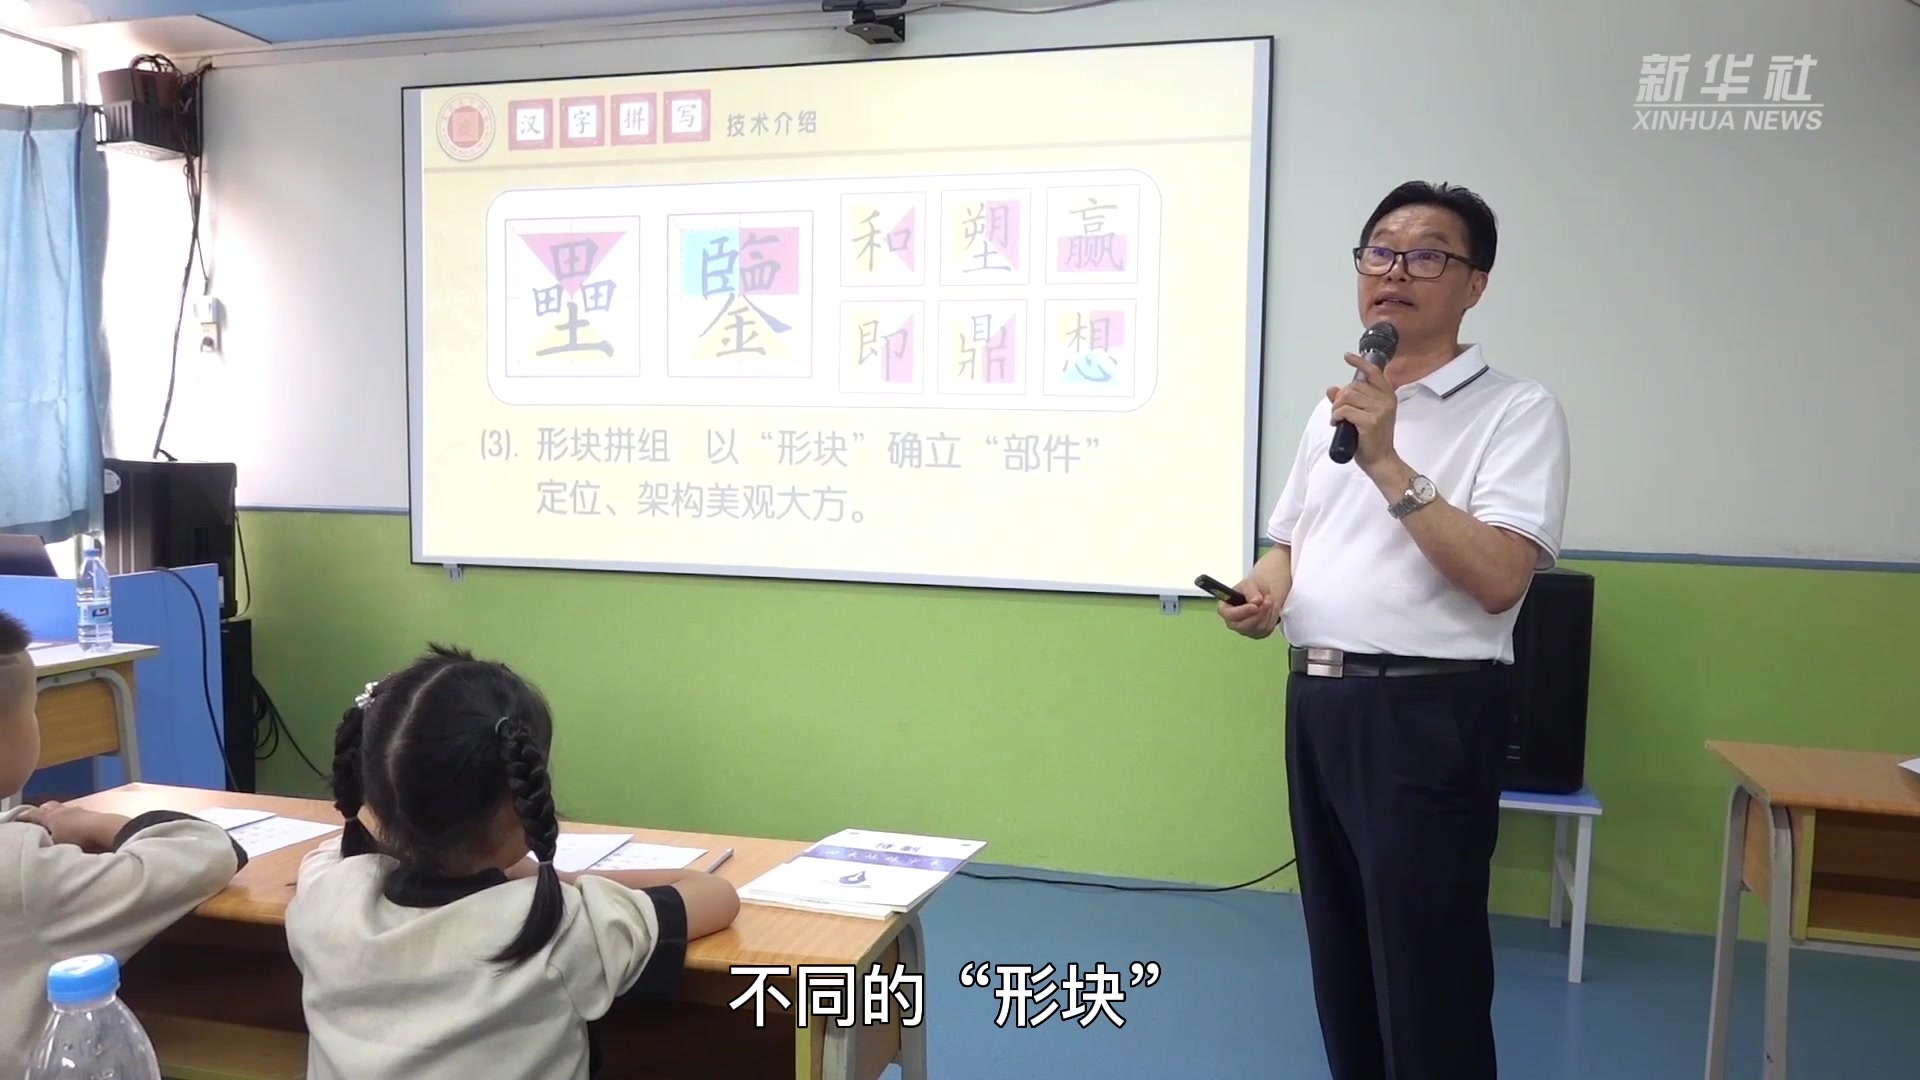 书法家独创汉字拼写技术帮助初学者写好字